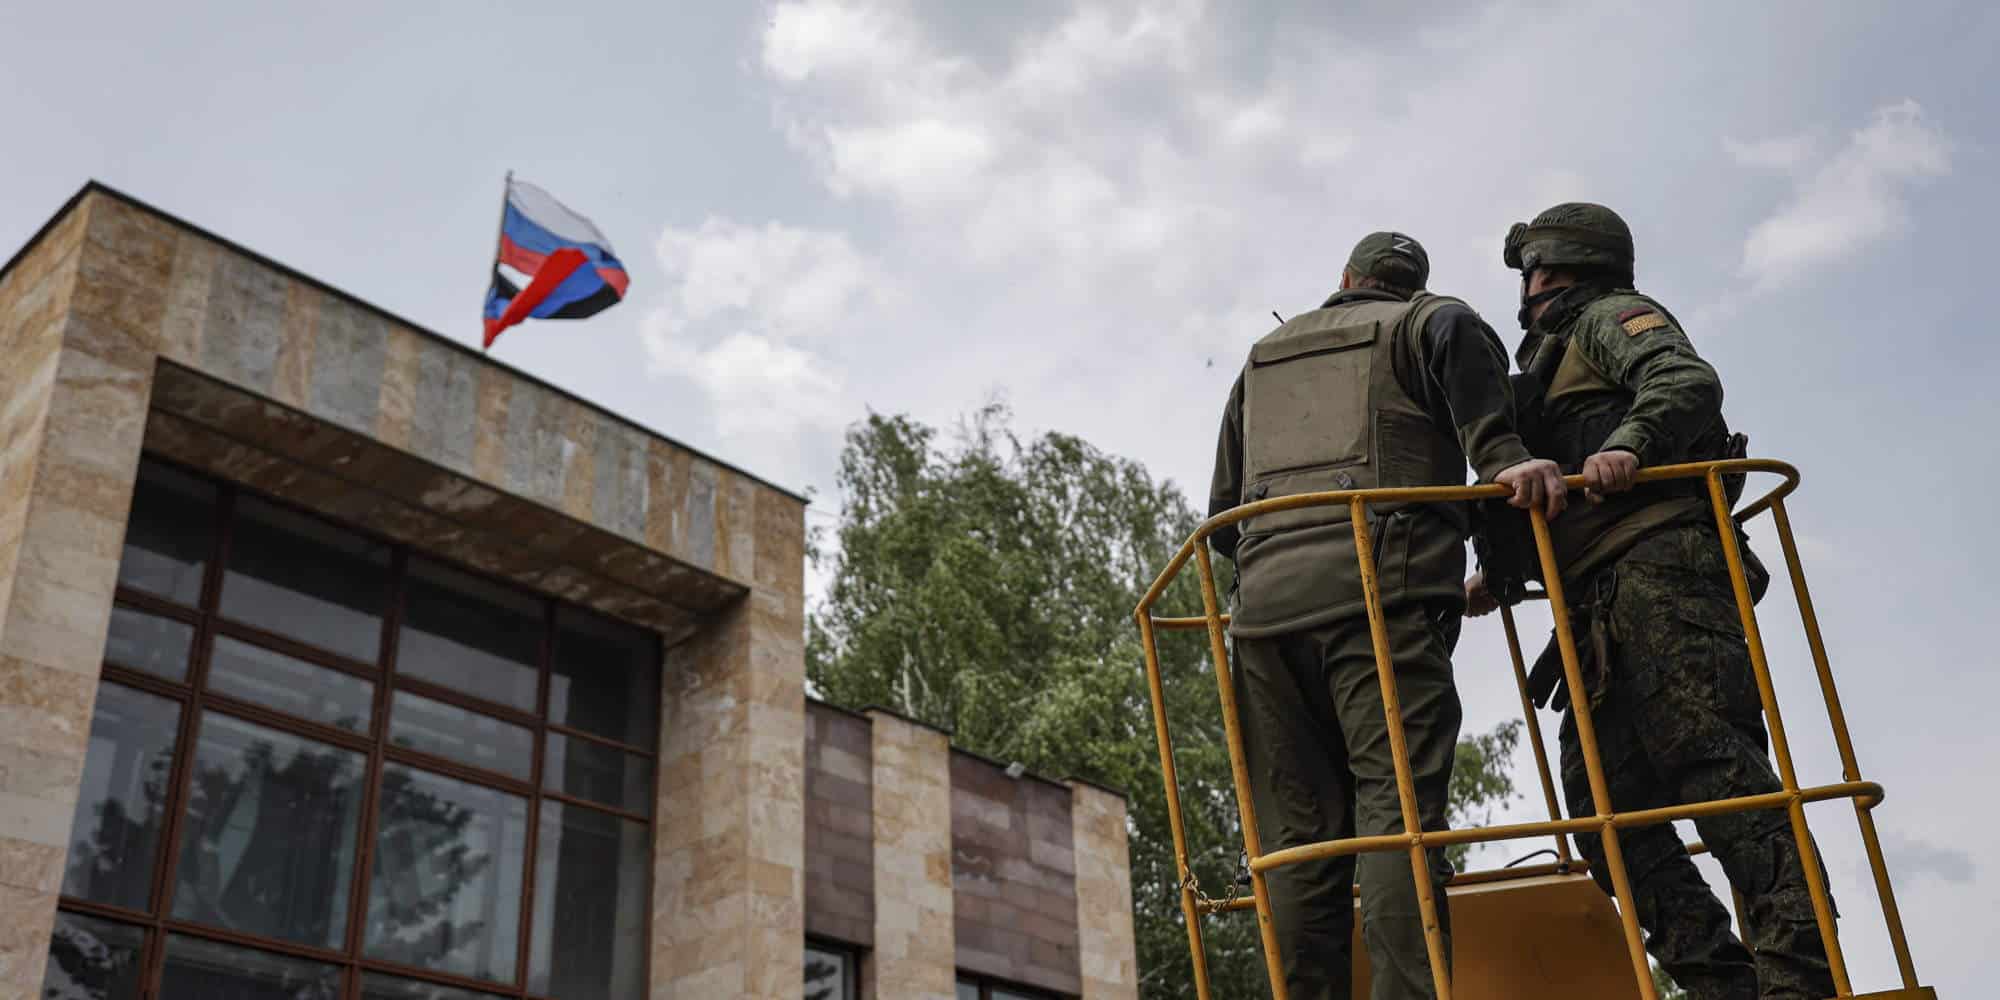 Ρώσοι στρατιώτες υψώνουν τη ρωσική σημαία στο Σεβεροντονέτσκ